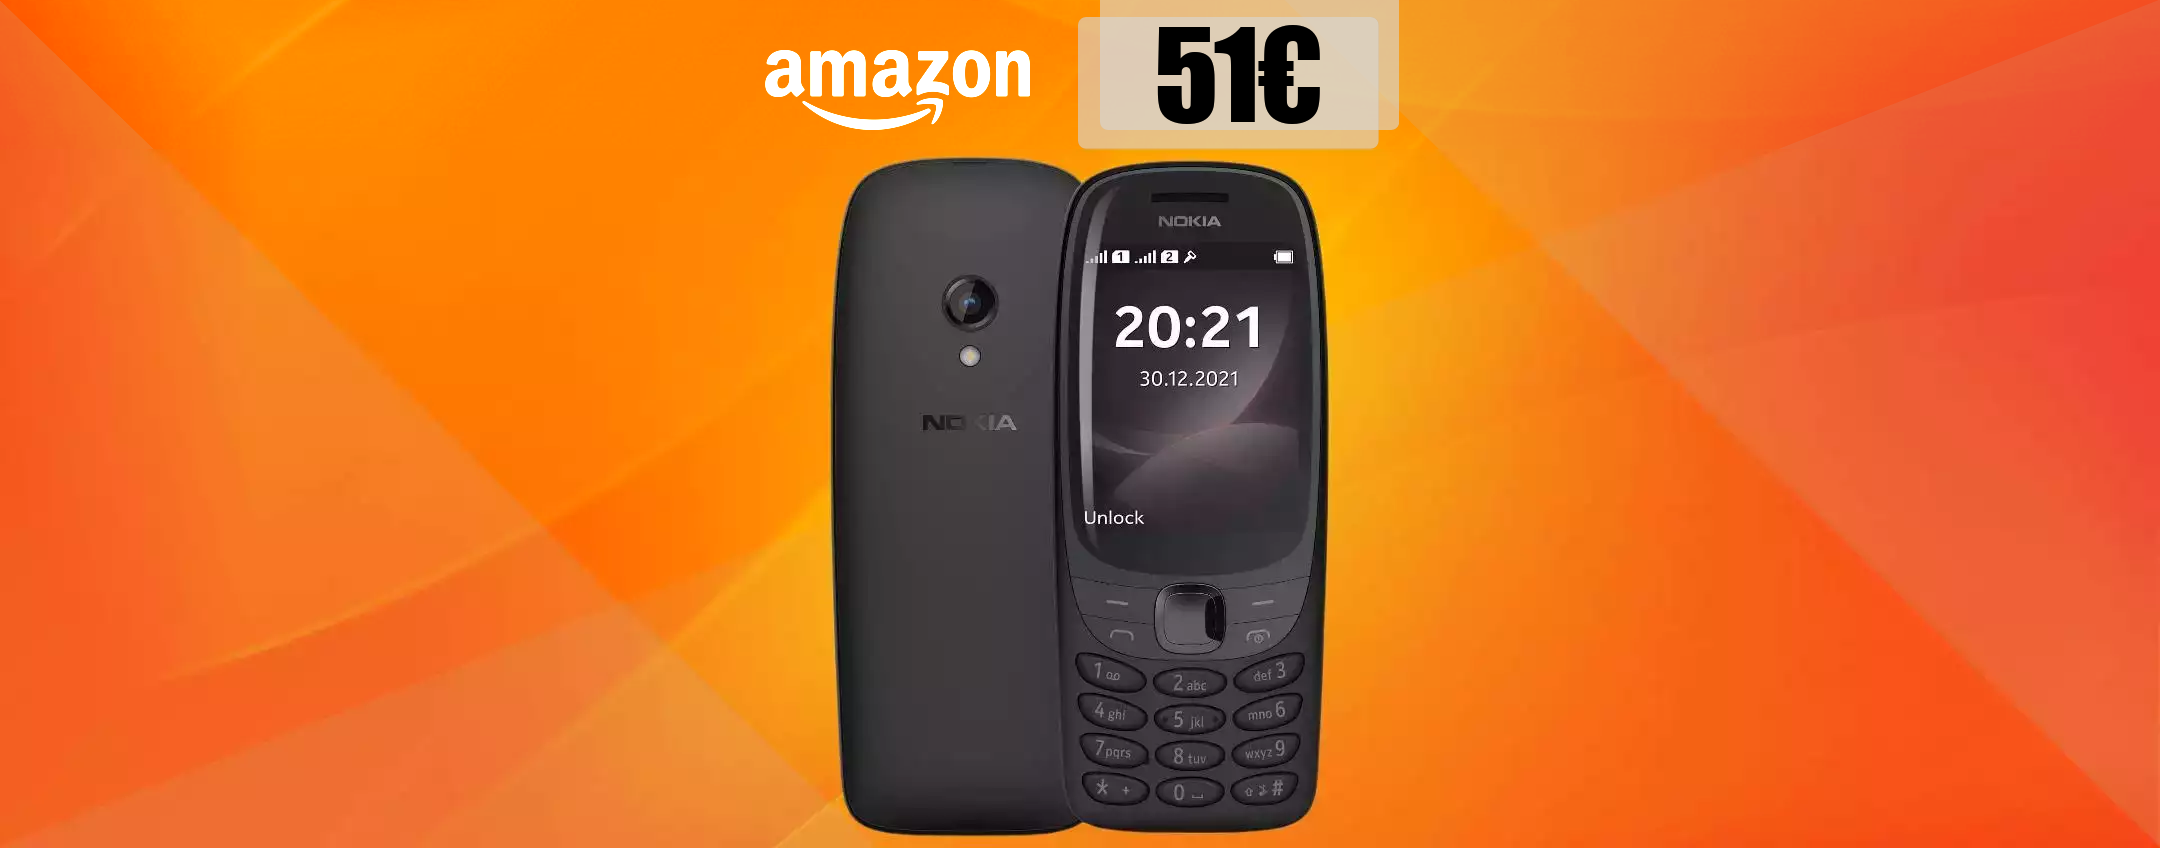 Nokia 6310, l'unico ed inimitabile: il Re è tornato, bastano 51 euro